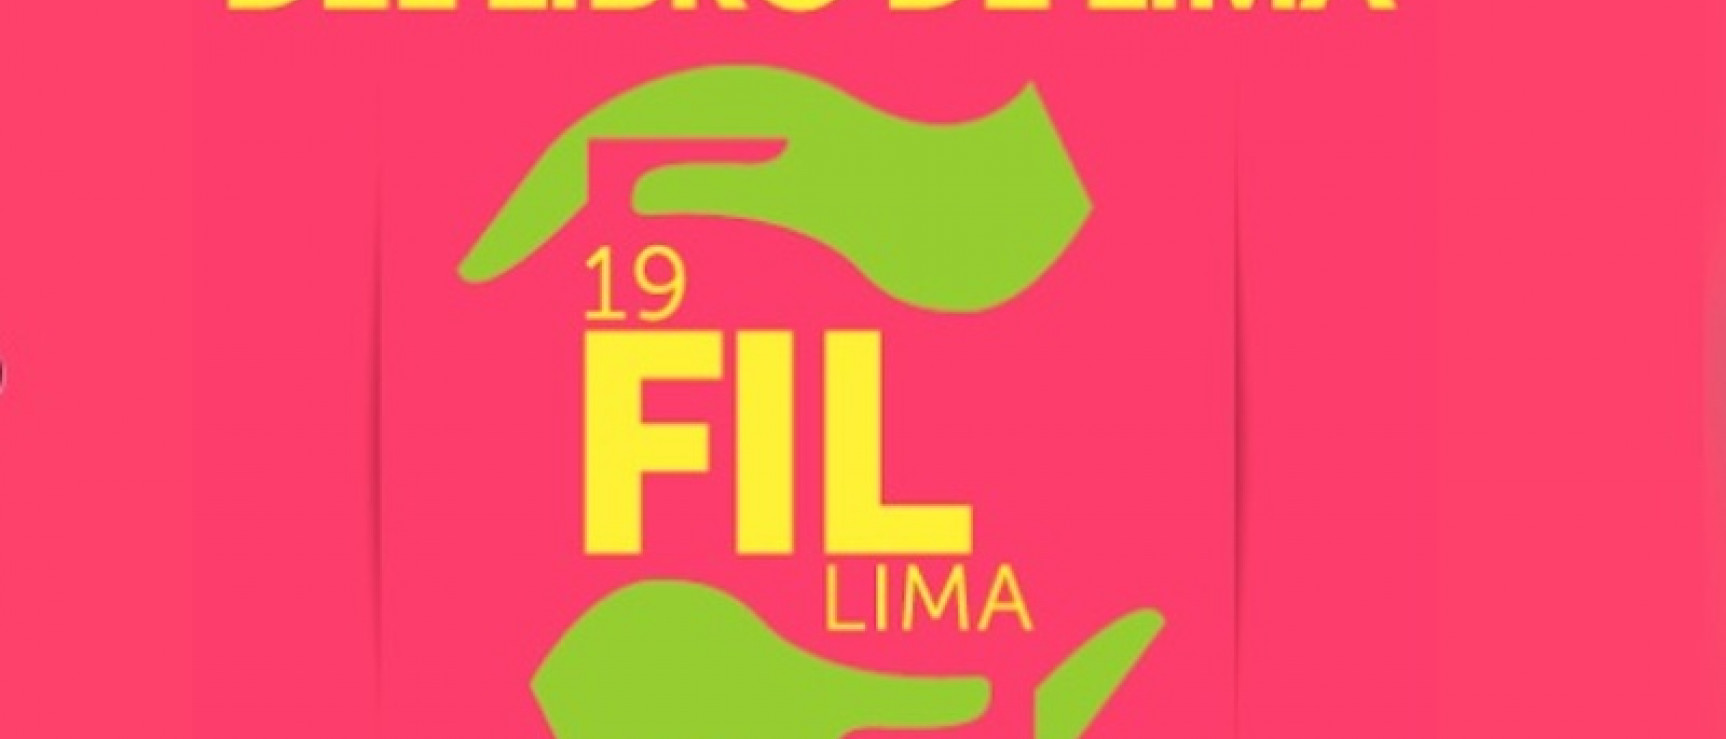 La Feria de Lima se clausura el 3 de agosto.